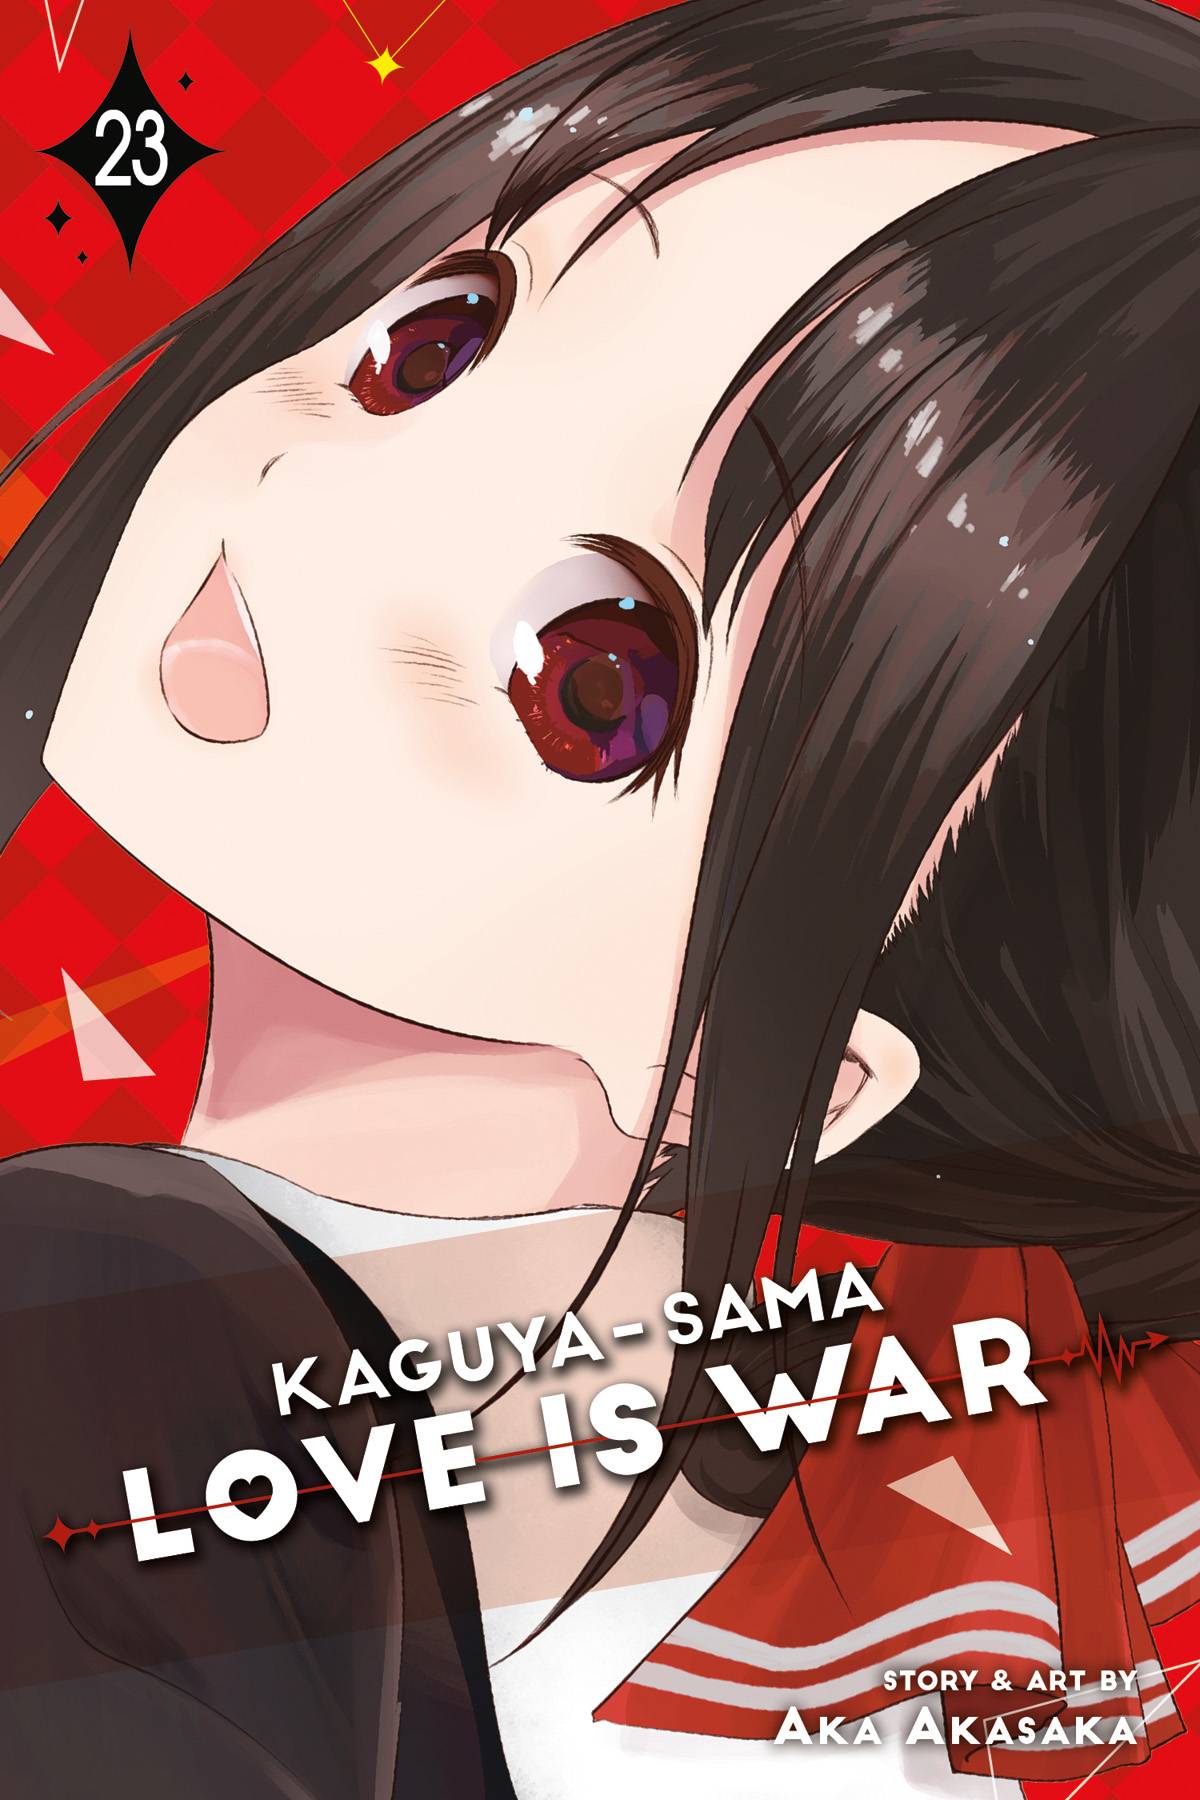 KAGUYA SAMA LOVE IS WAR GN VOL 23